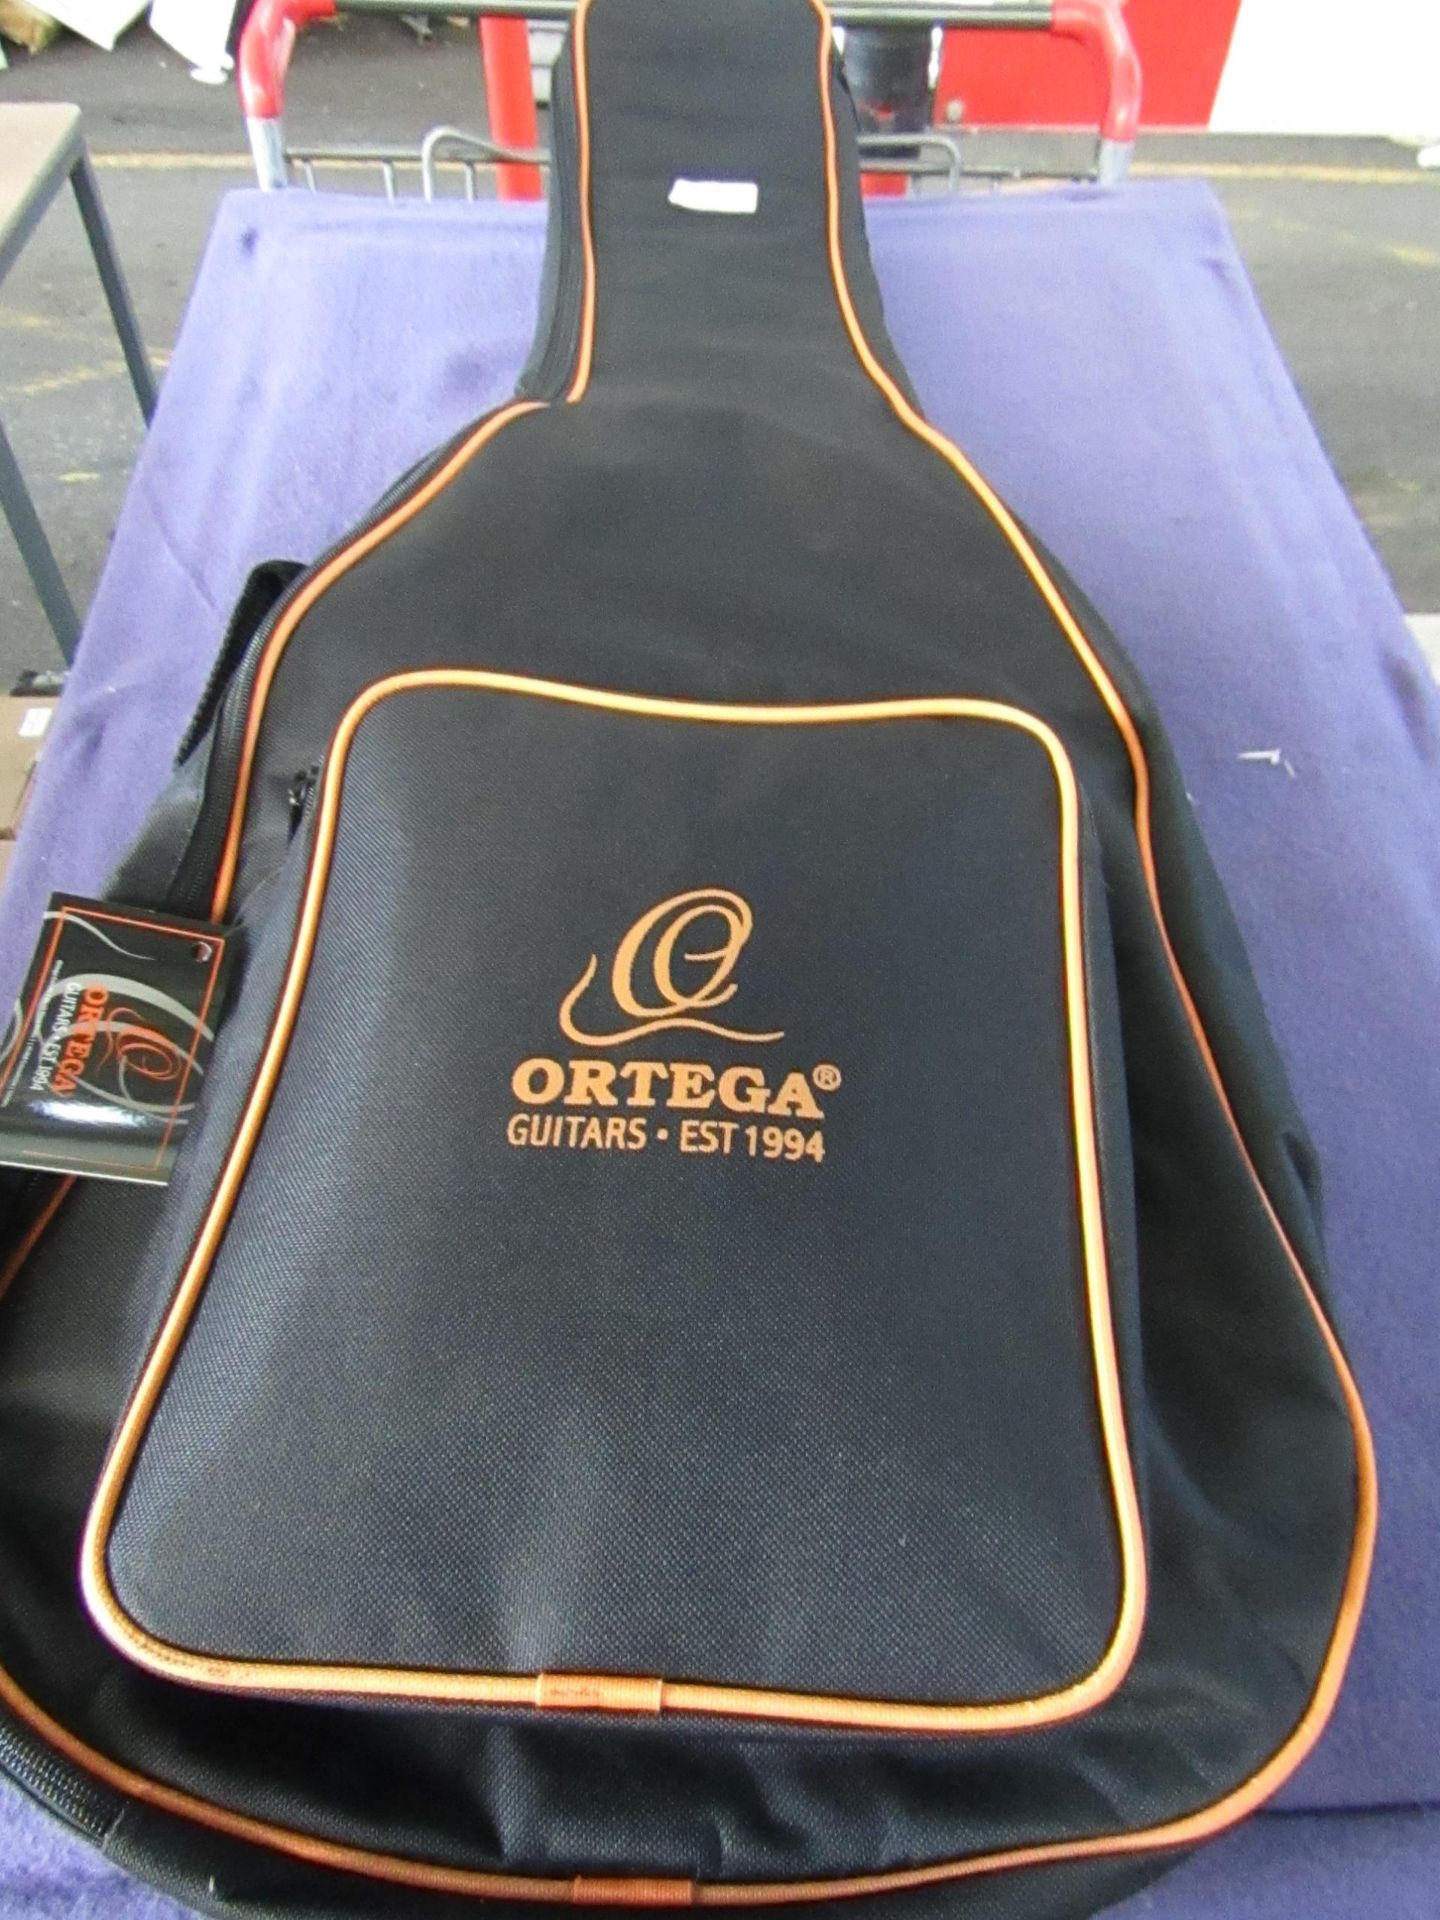 Ortega - 37" Guitar Bag - Good Condition,Original Tags.